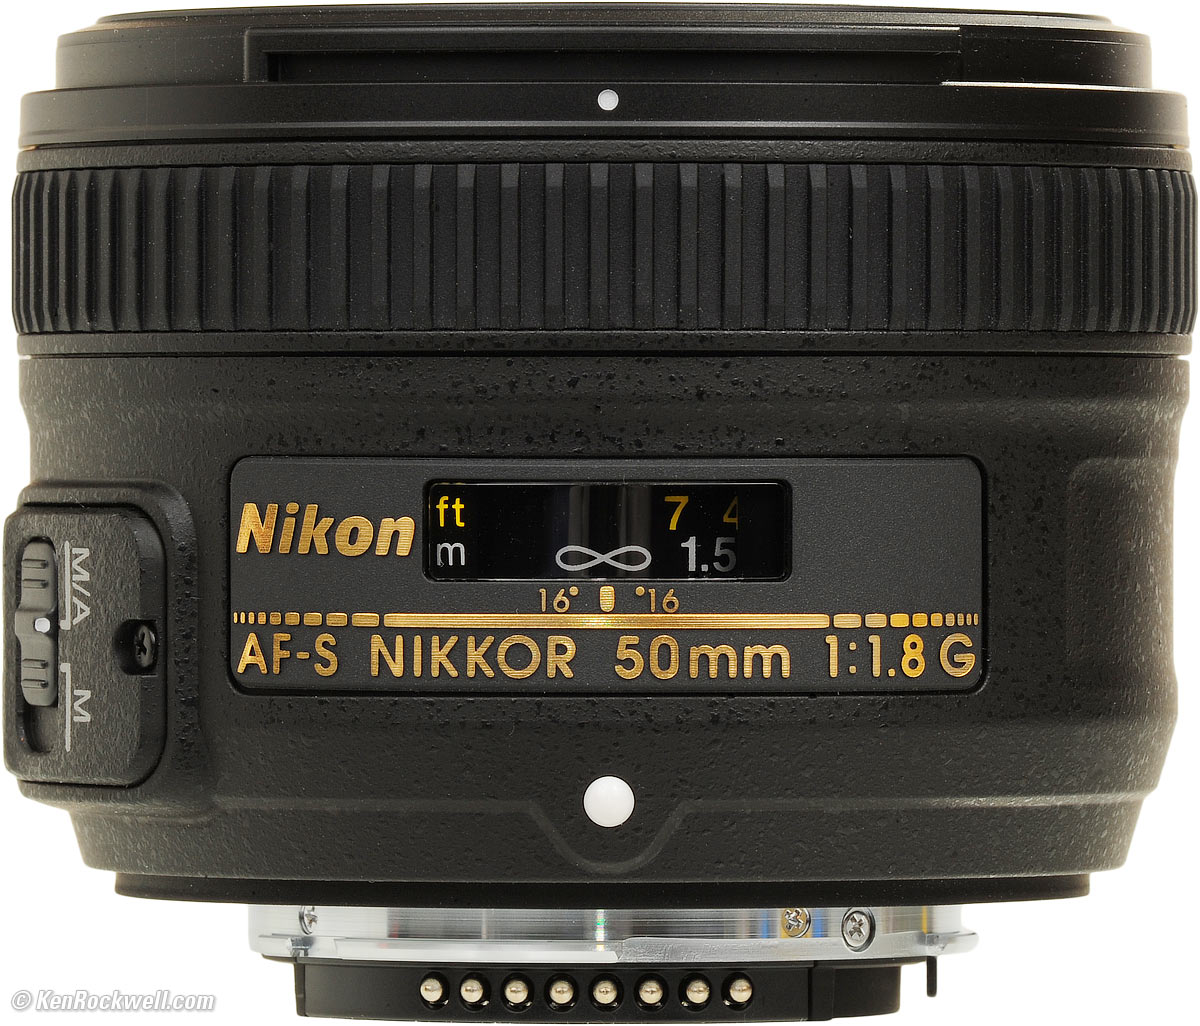 Trend violent interrupt Nikon AF-S 50mm f/1.8 G